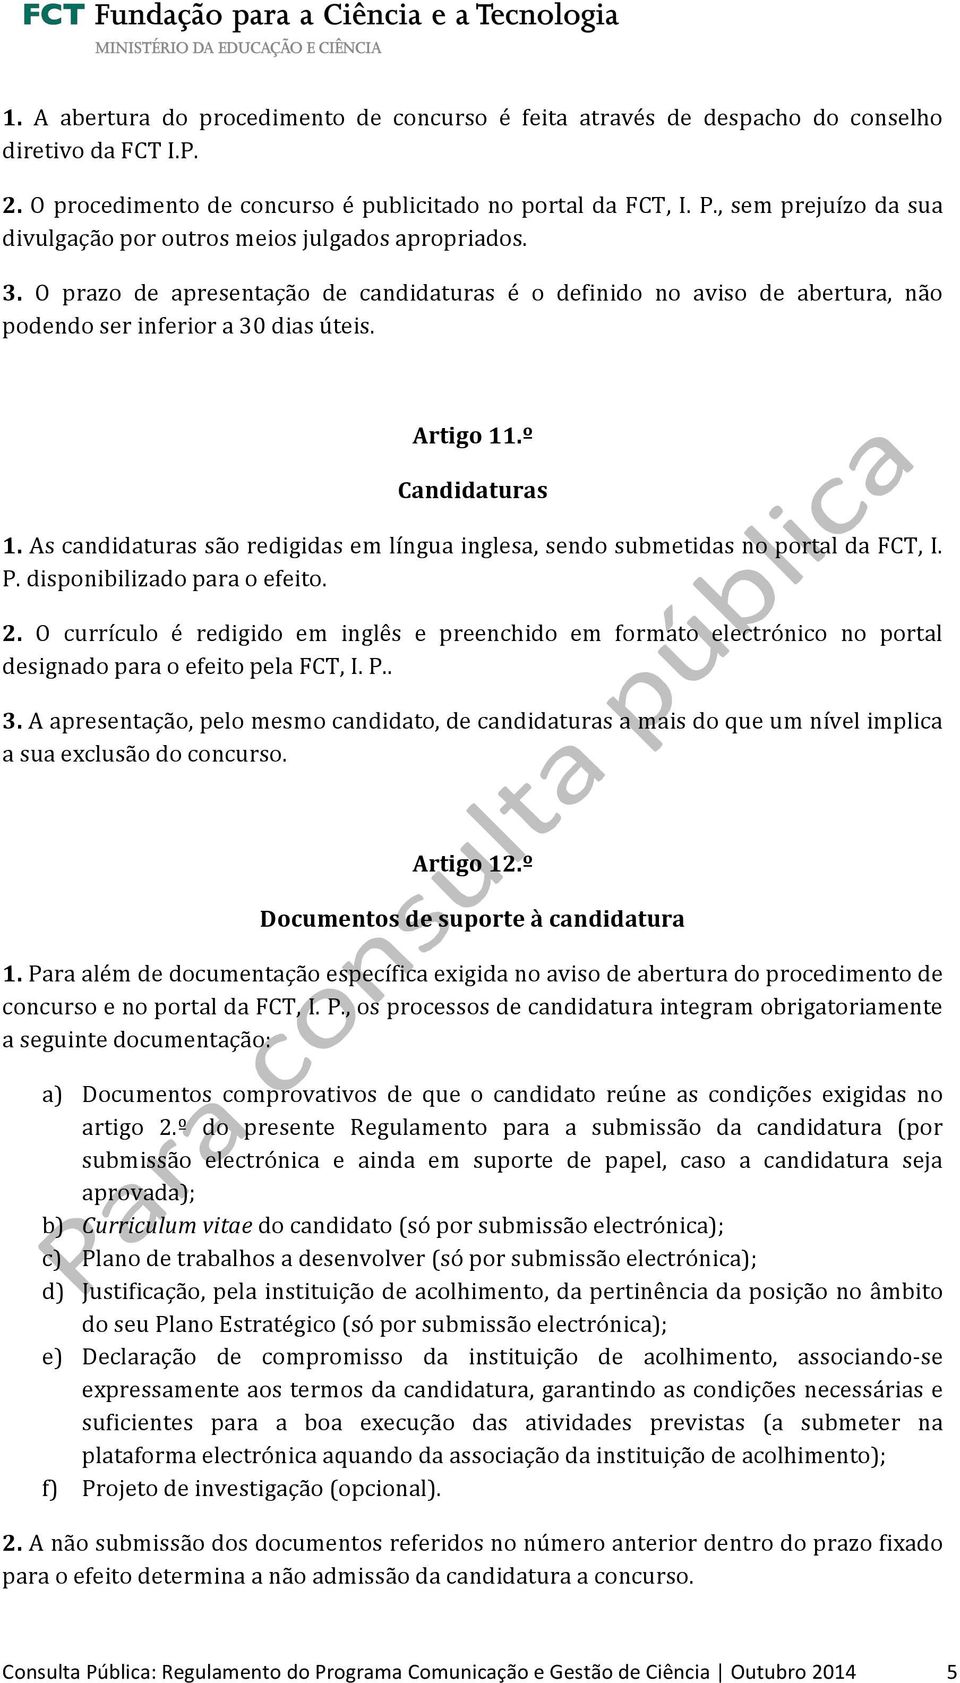 Artigo 11.º Candidaturas 1. As candidaturas são redigidas em língua inglesa, sendo submetidas no portal da FCT, I. P. disponibilizado para o efeito. 2.